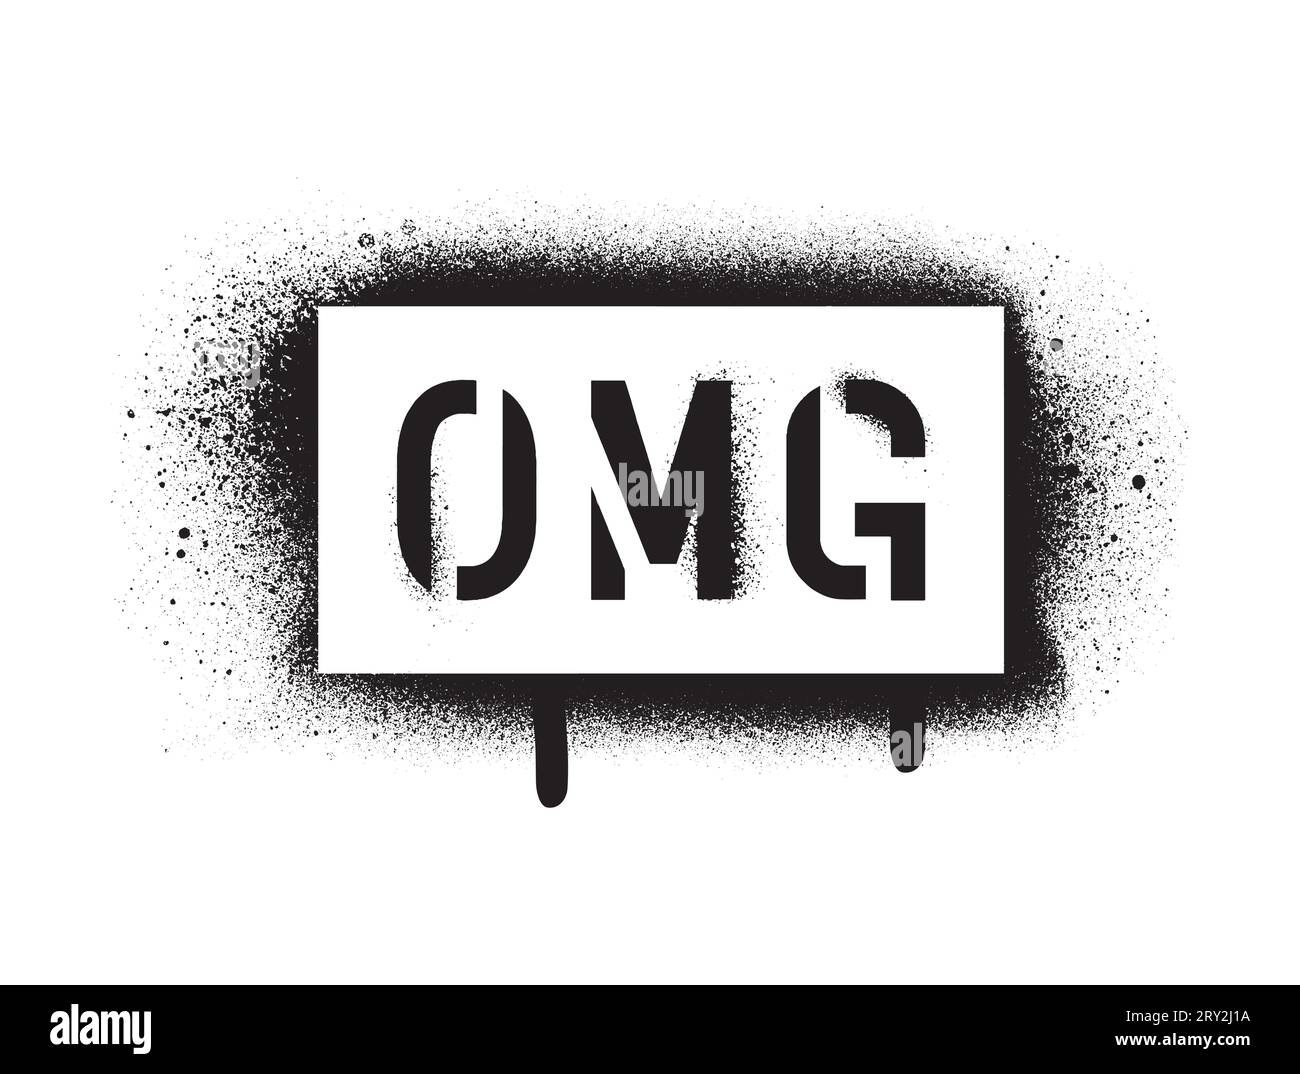 OMG (Oh mio Dio) citazione abbreviazione, spesso utilizzata nei messaggi SMS e nelle comunicazioni via Internet. Stencil per graffiti con vernice spray. Illustrazione Vettoriale